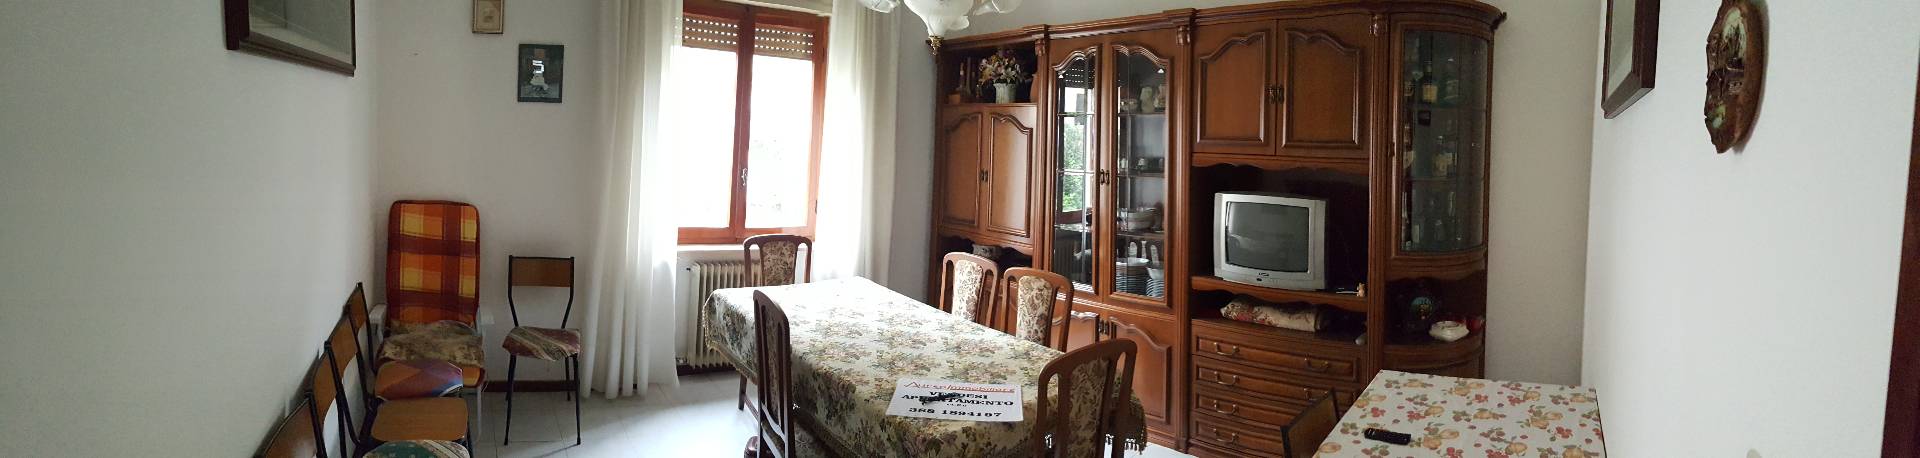 Appartamento in vendita a Roccafluvione, 5 locali, prezzo € 73.000 | CambioCasa.it